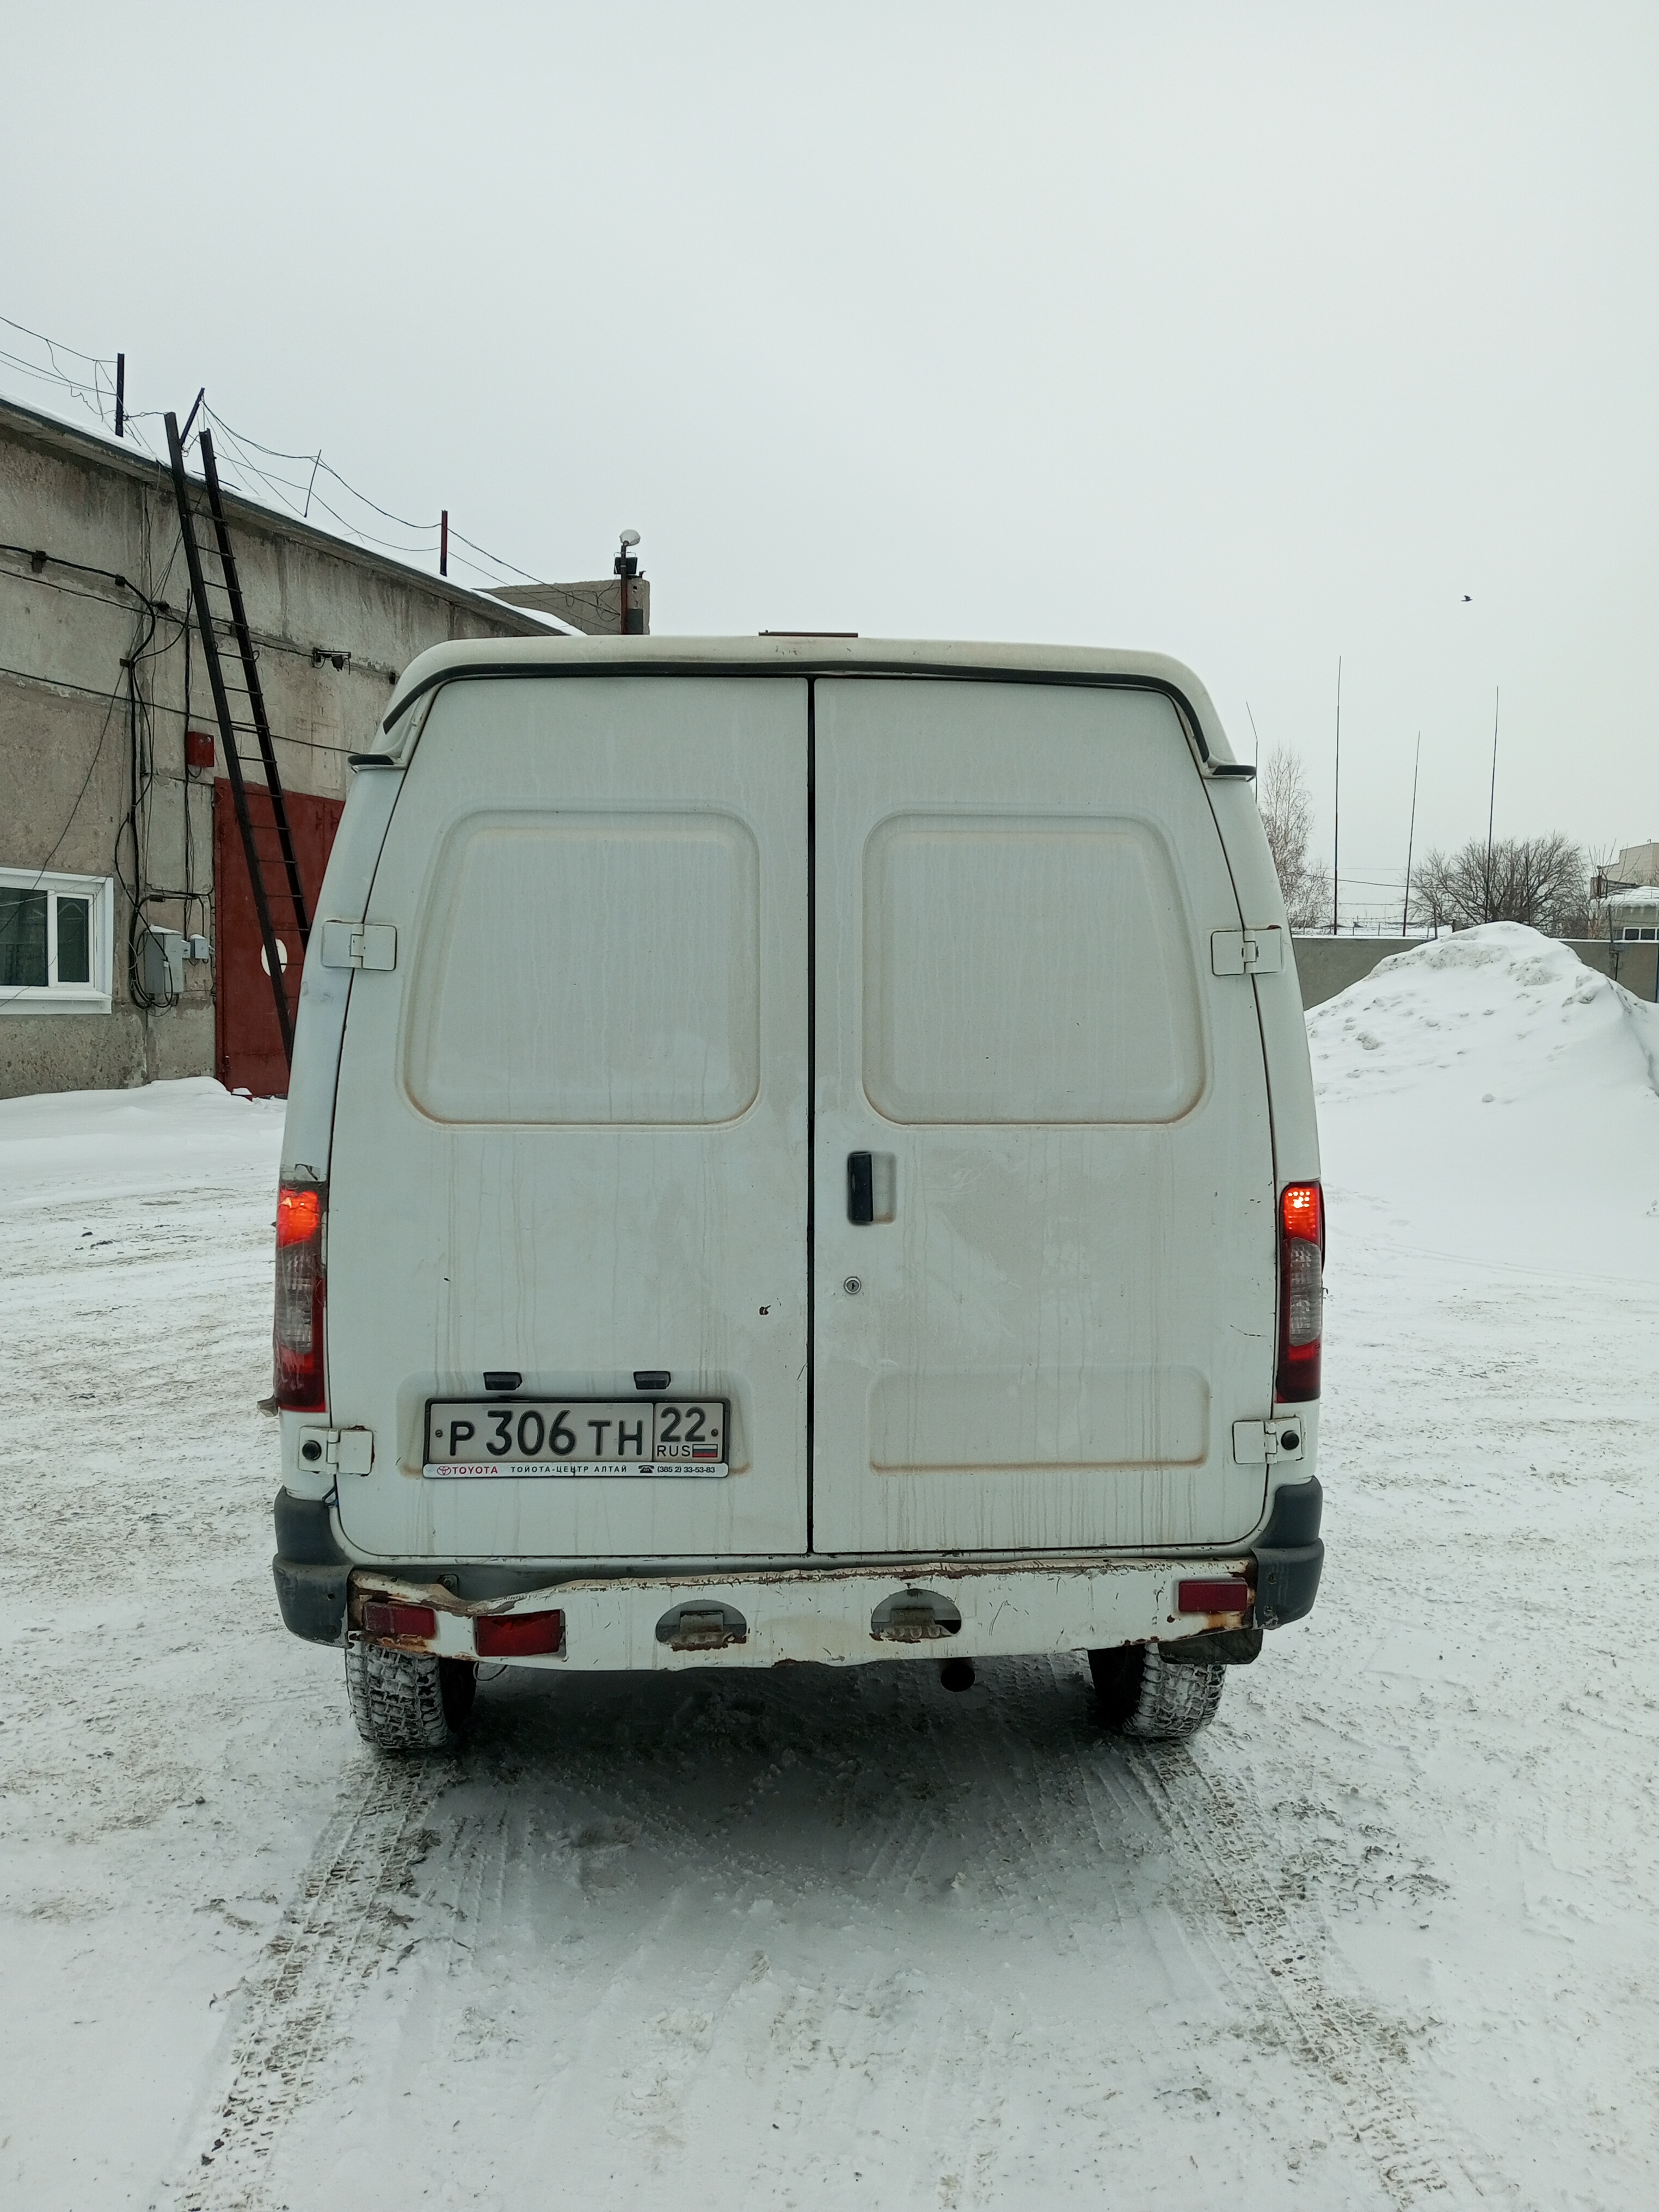 213038-Автомобиль ГАЗ-27527-298 (фургон грузовой) гос. номер Р306ТН22 Филиал АО "Барнаульская генерация"-"Барнаульская теплосетевая компания"-0